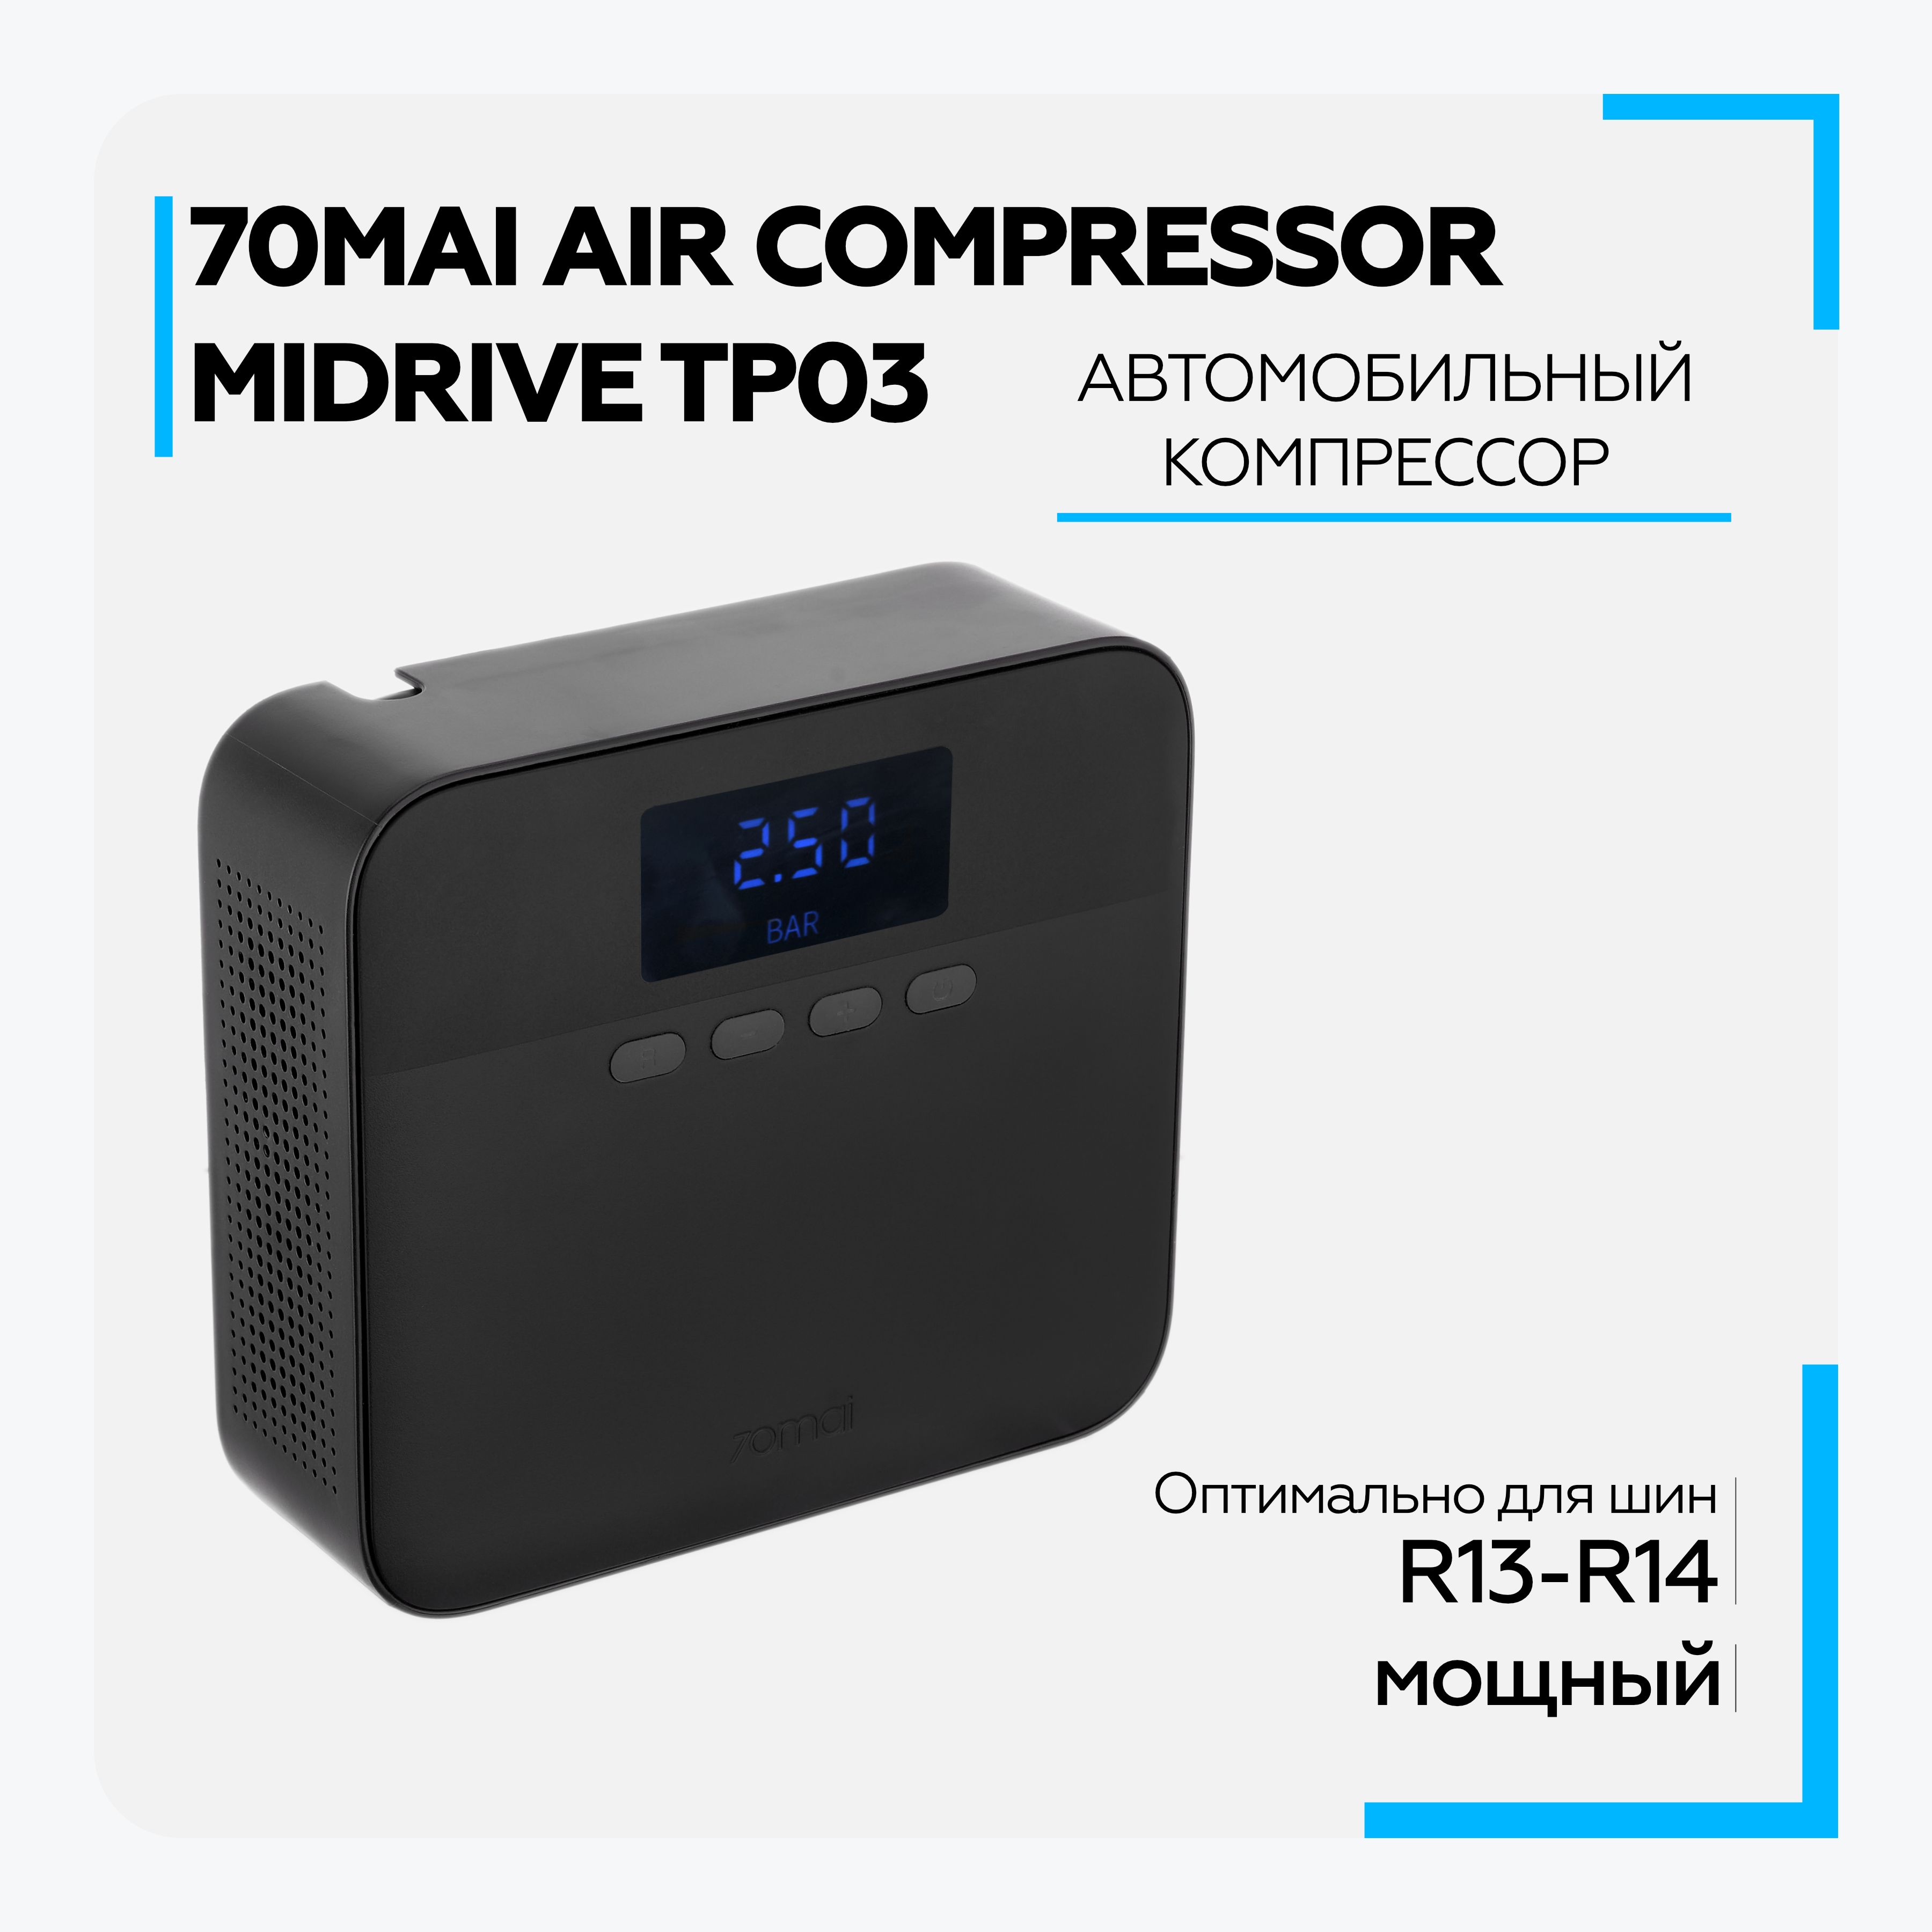 Компрессор 70mai air compressor lite. Автомобильный компрессор Xiaomi 70mai Air Compressor Lite (MIDRIVE tp03). Автомобильный компрессор 70mai Air Compressor Lite MIDRIVE. Автомобильный компрессор 70mai Air Compressor Lite MIDRIVE tp03. 70mai Air Compressor Lite.